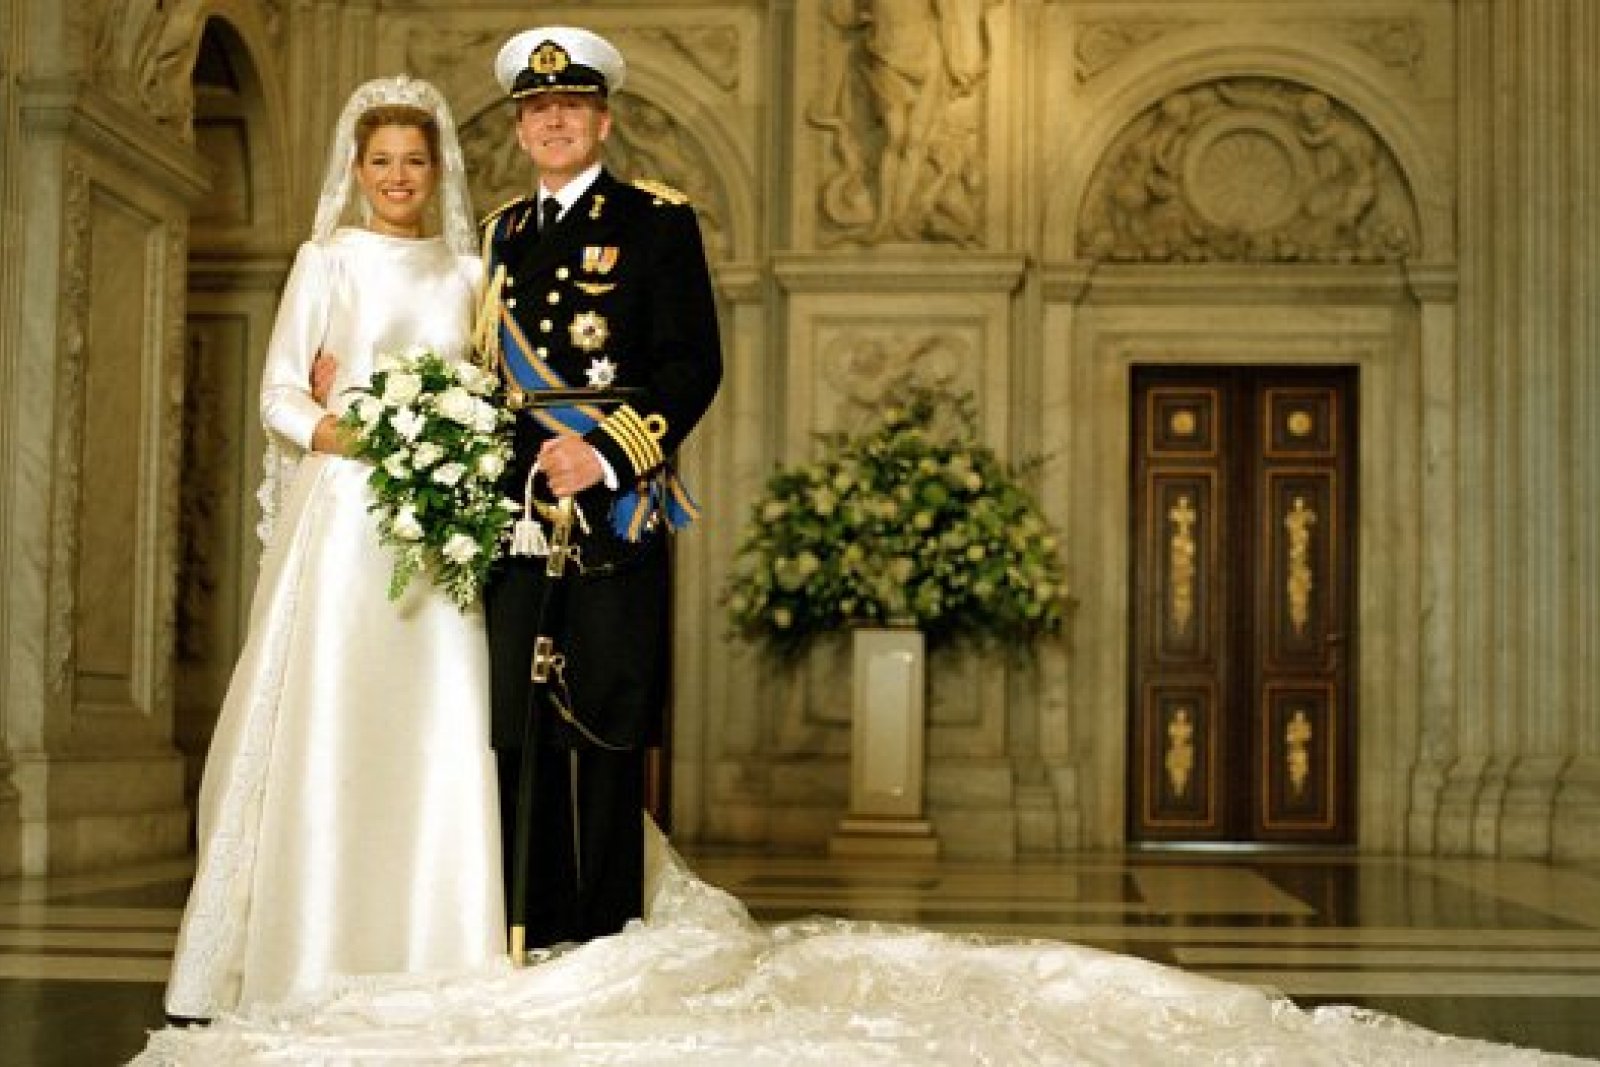 Wedding portret of Prins of Orange and Princess Máxima